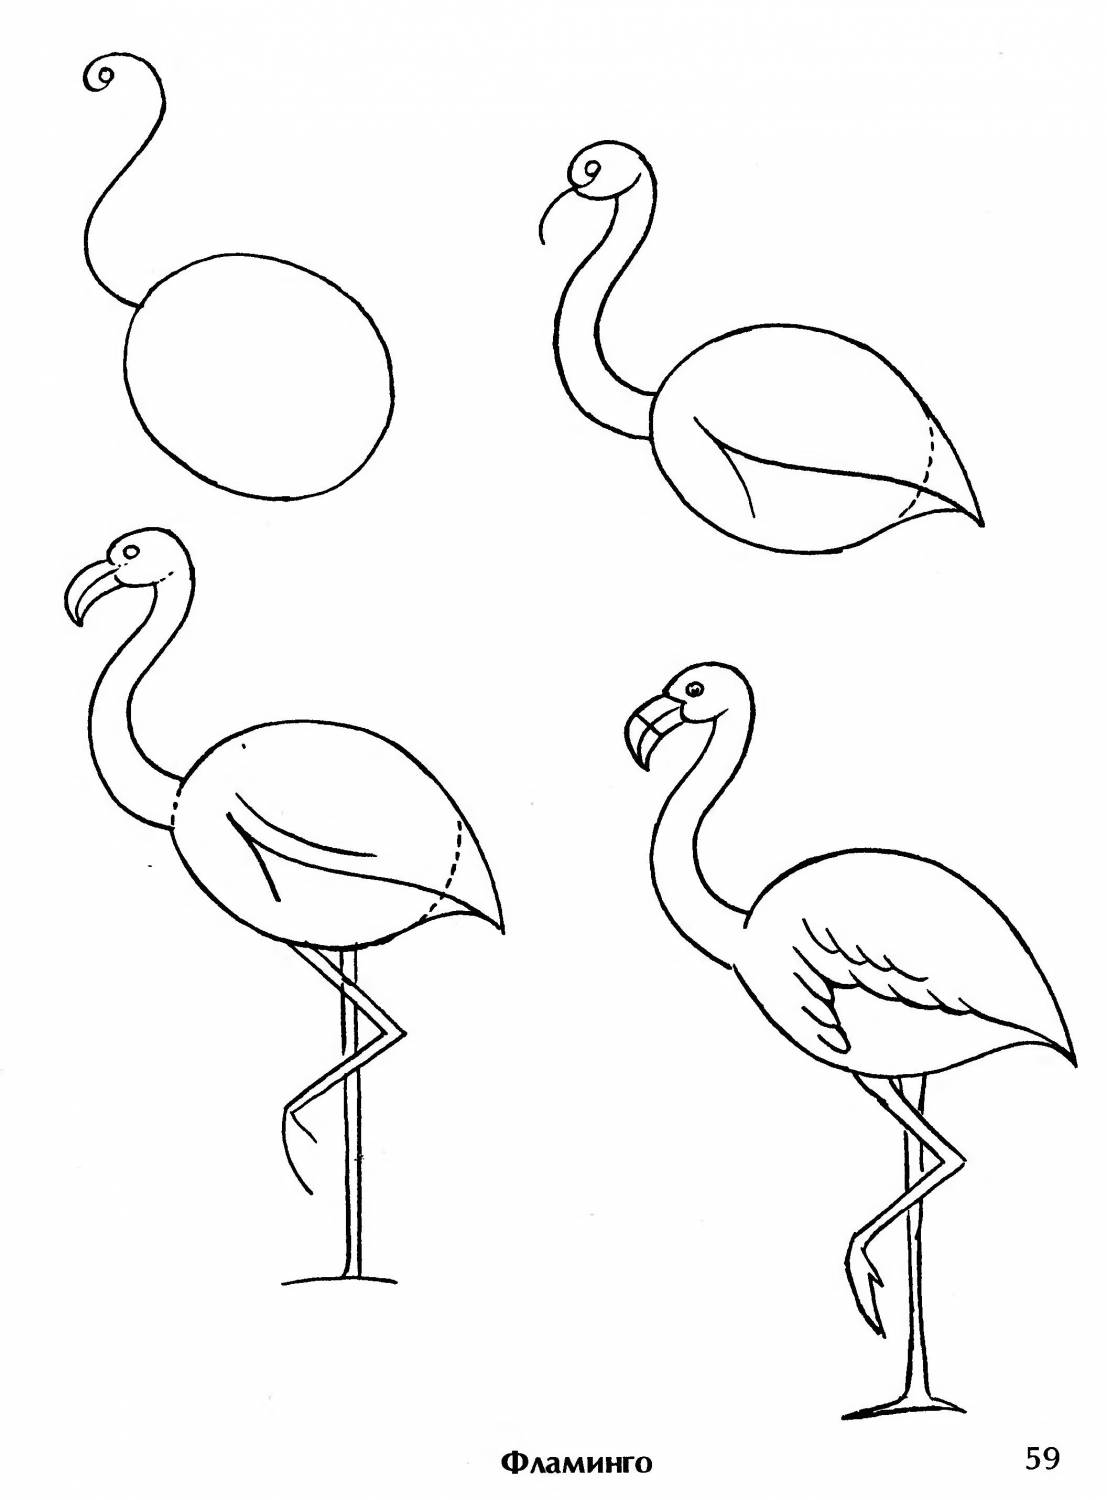 Учимся рисовать фламинго поэтапно: рисование карандашом своими руками